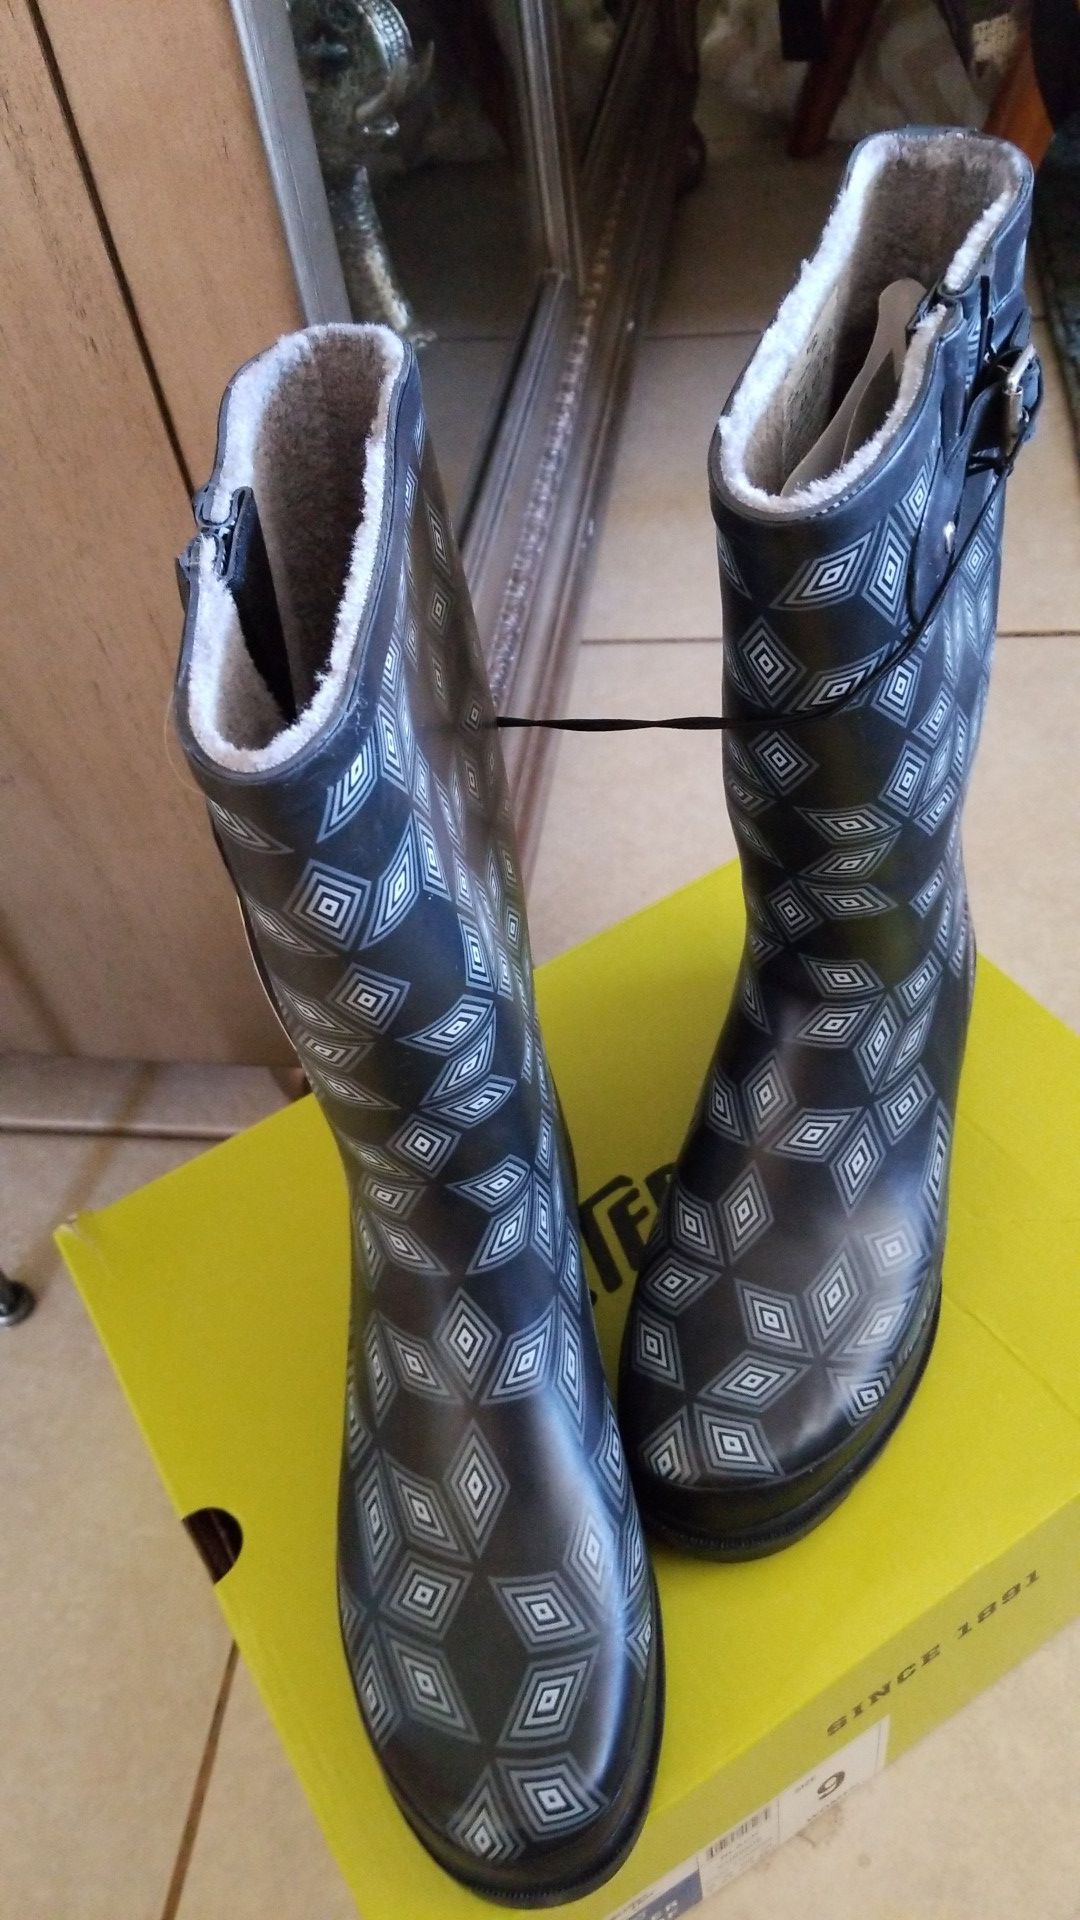 Boots - rubber - waterproof - rain